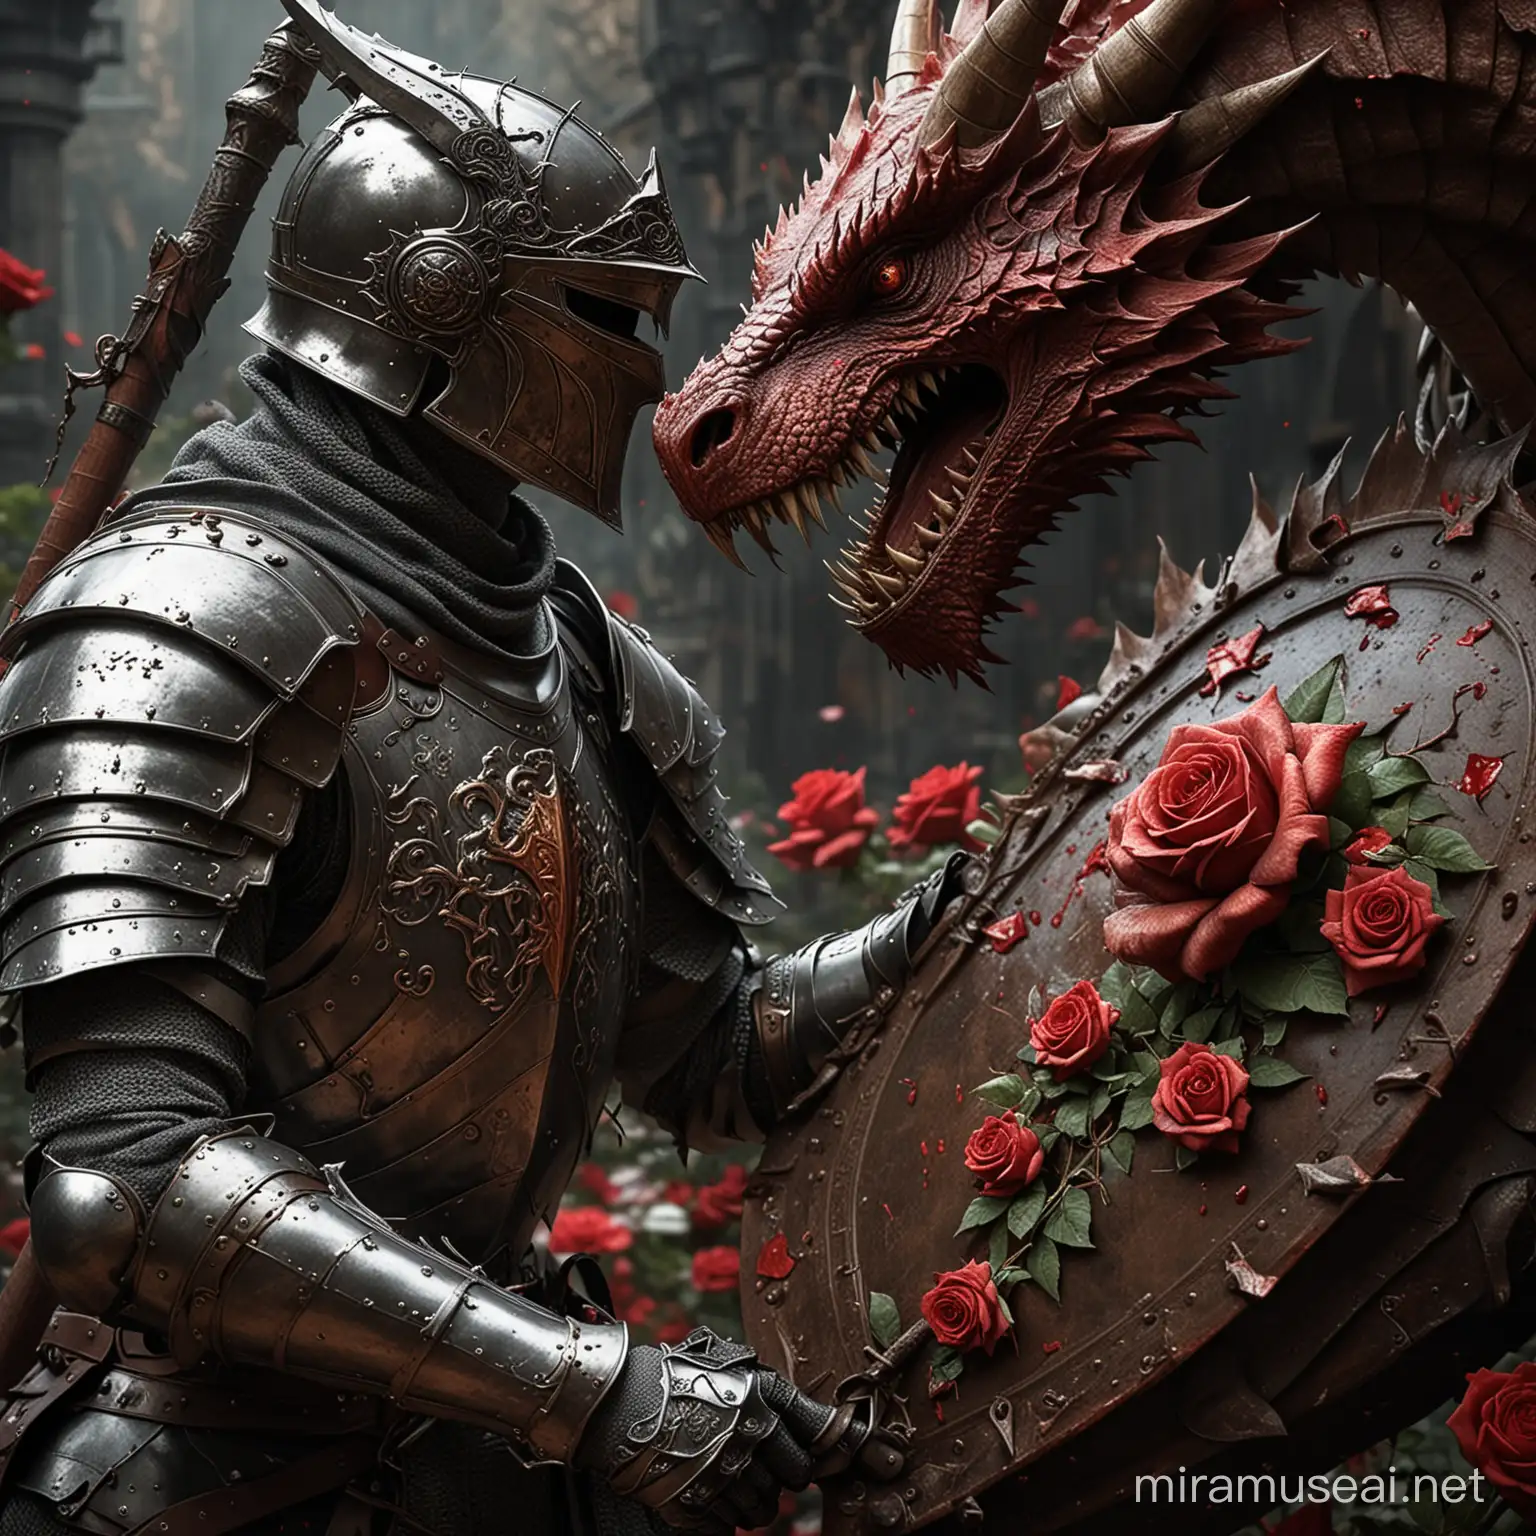 Epic Battle Knight vs Dragon in a Roseladen Duel